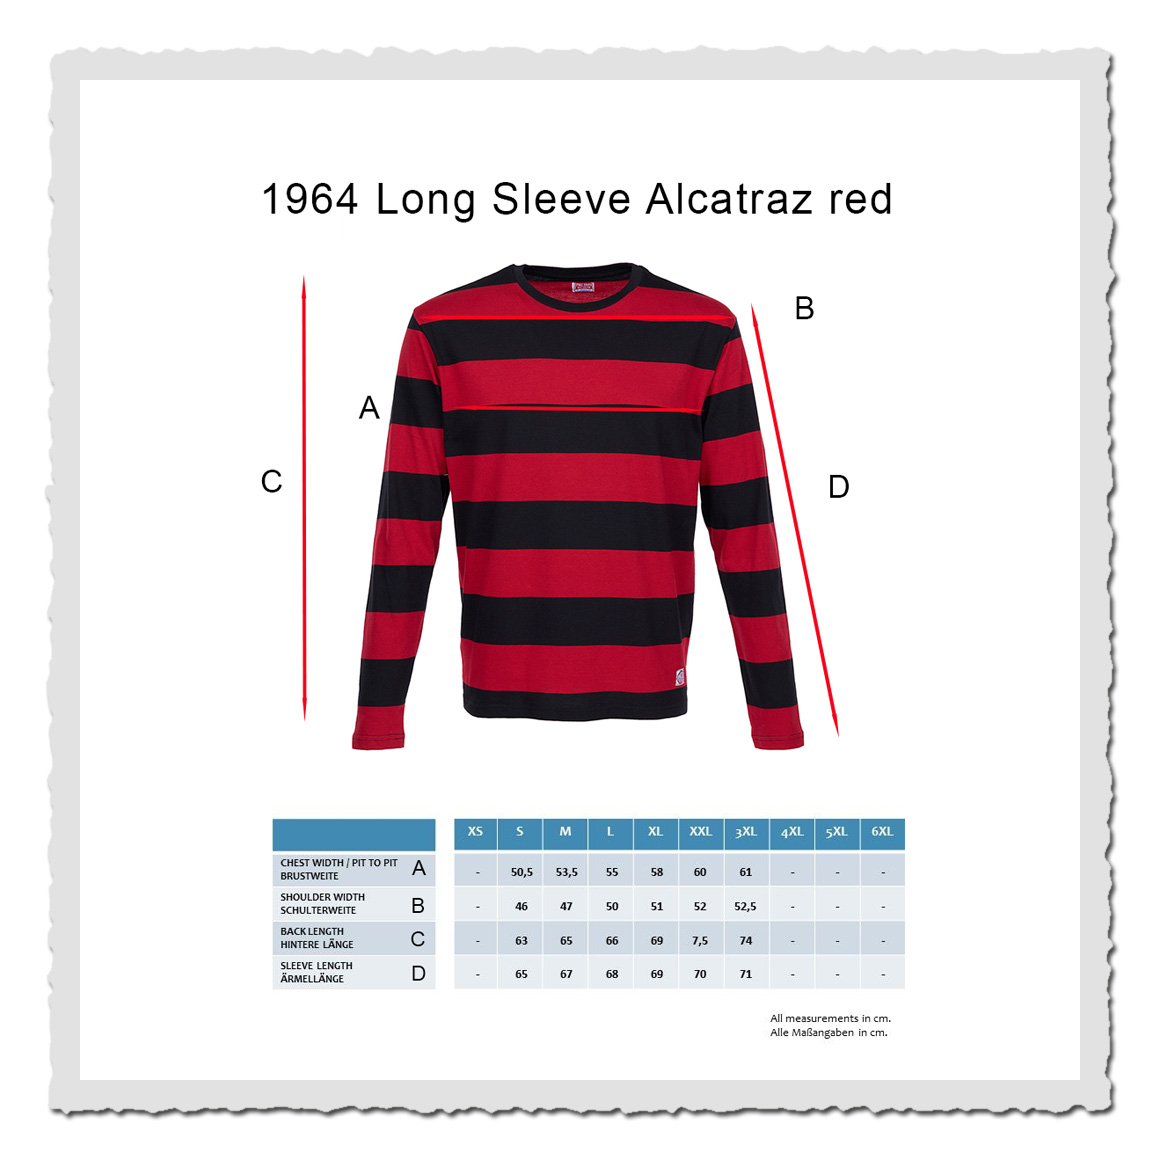 1964 Long Sleeve Alcatraz red